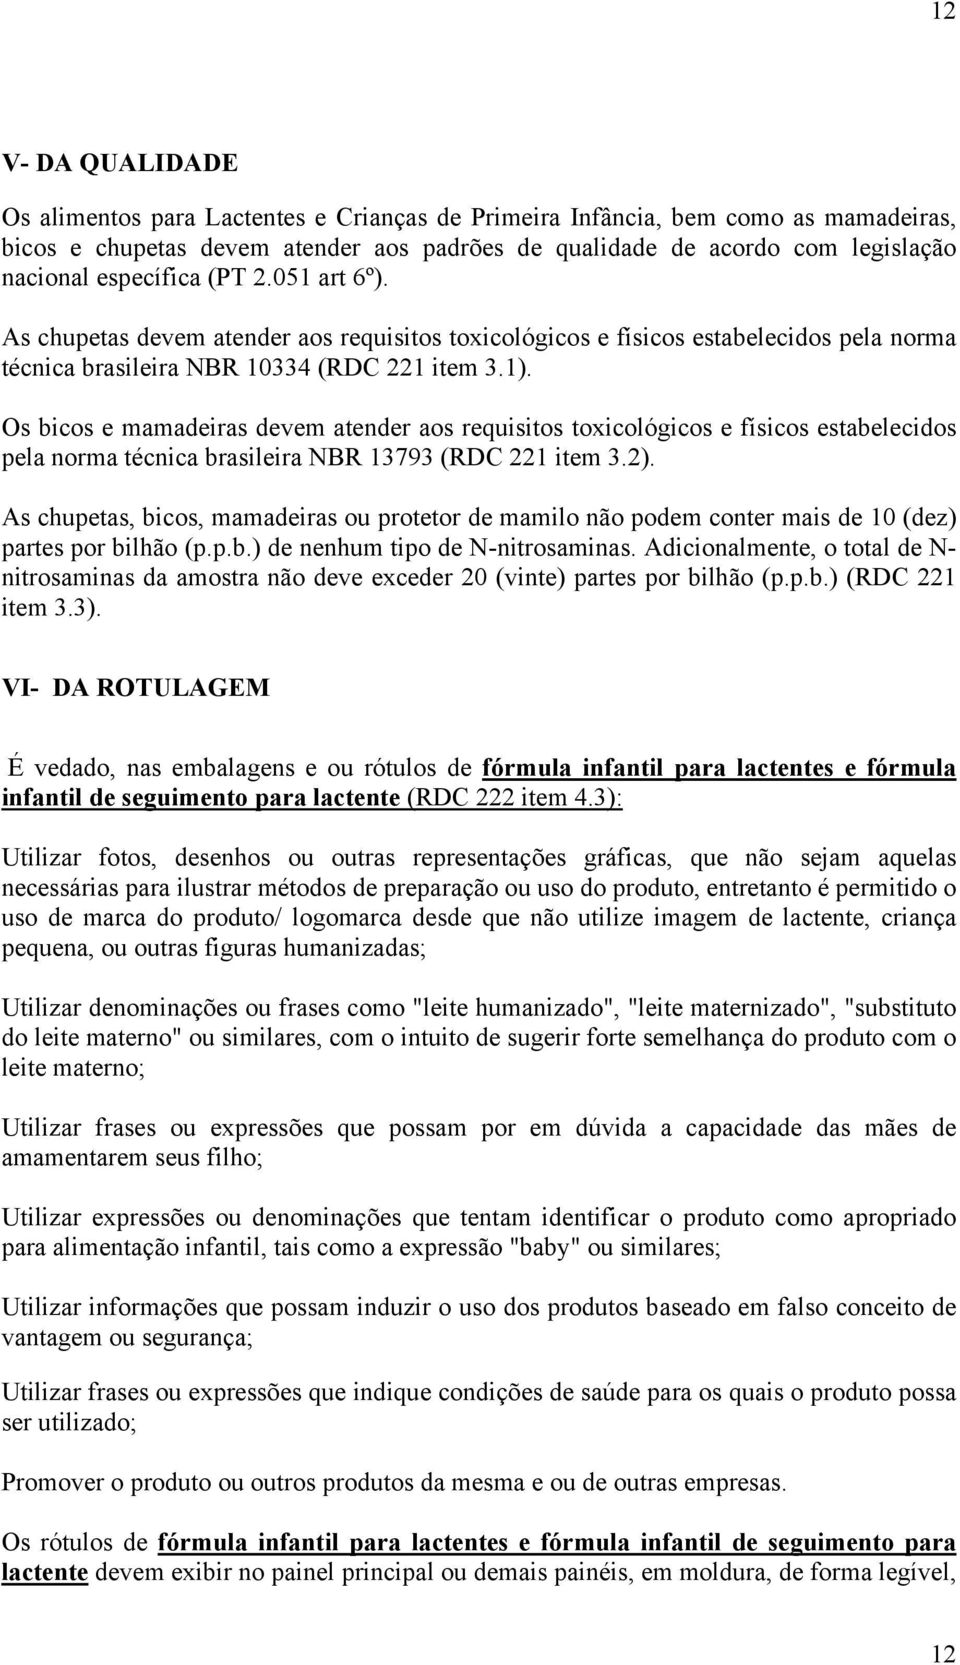 Os bicos e mamadeiras devem atender aos requisitos toxicológicos e físicos estabelecidos pela norma técnica brasileira NBR 13793 (RDC 221 item 3.2).